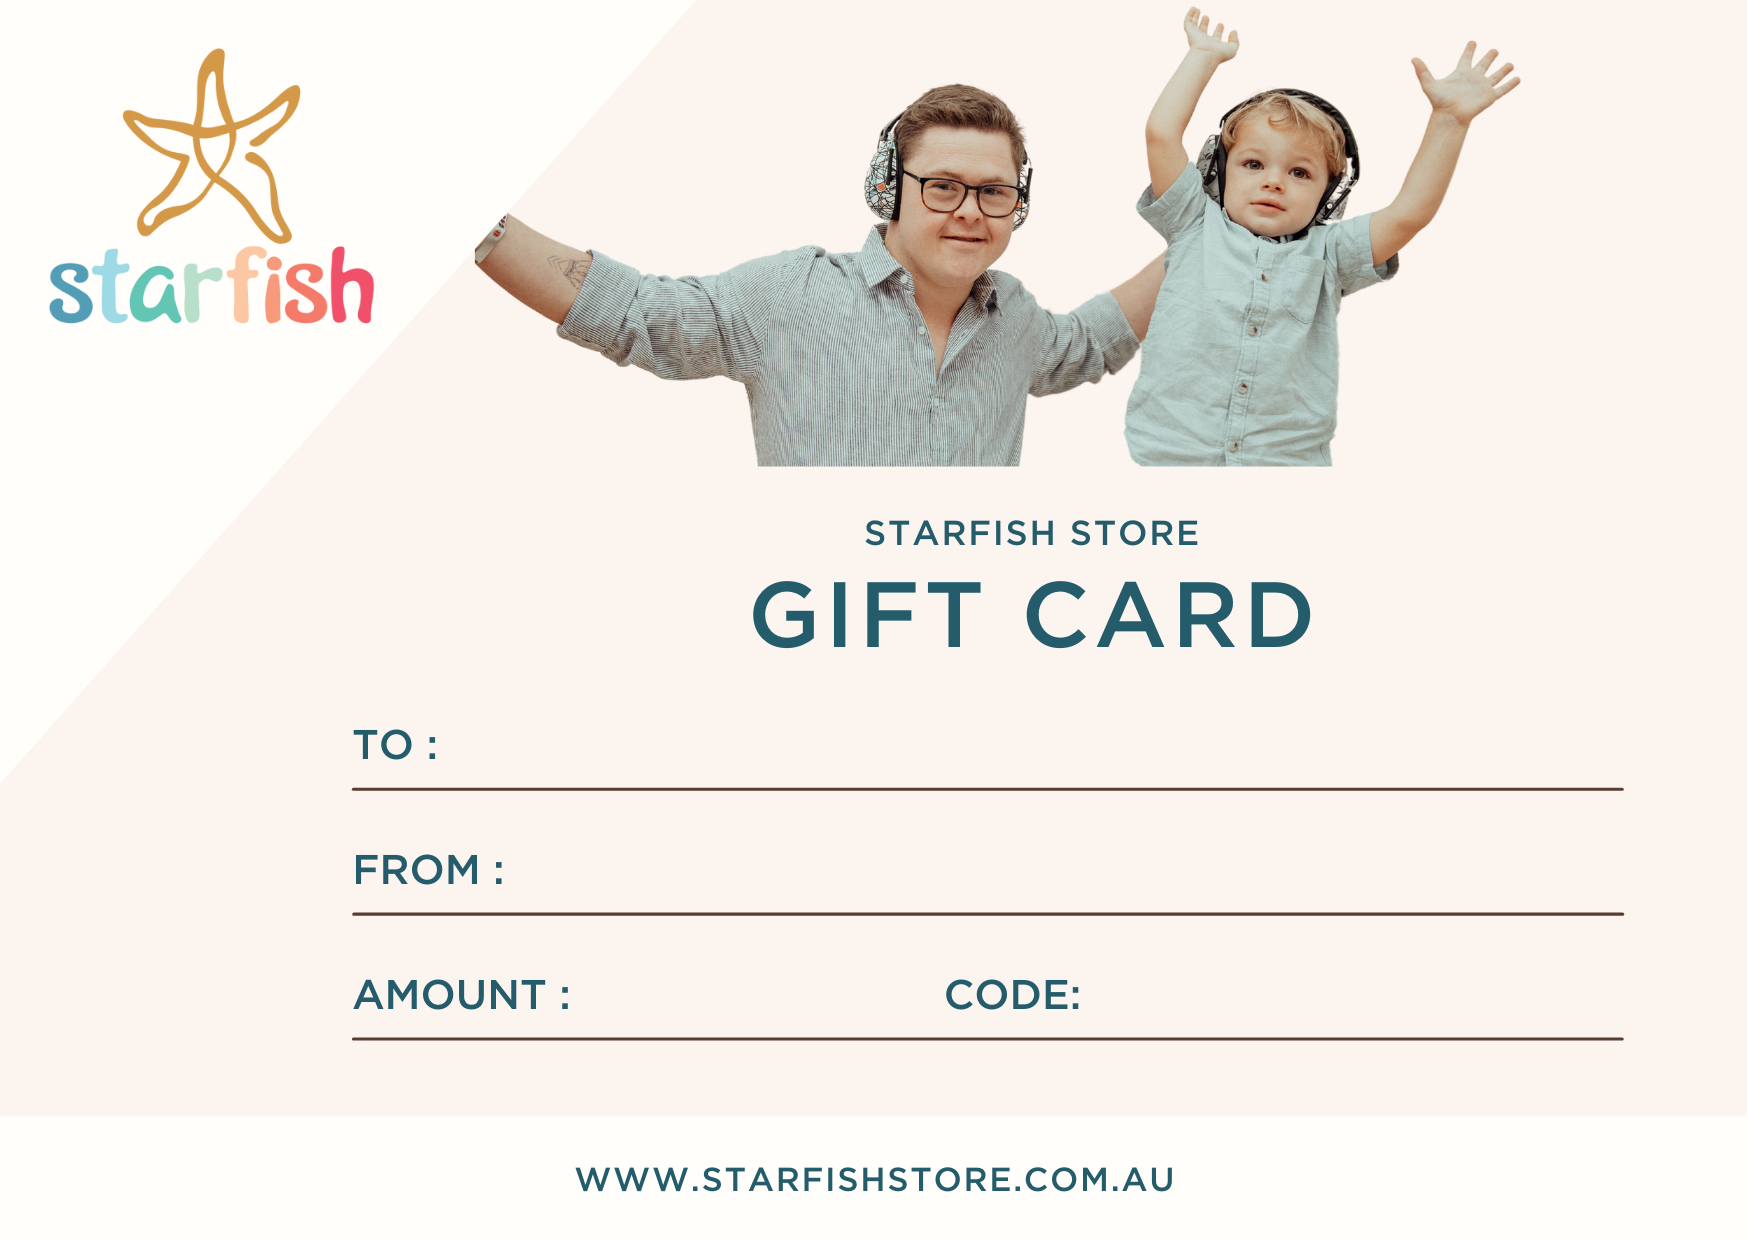 Starfish Store Gift Card